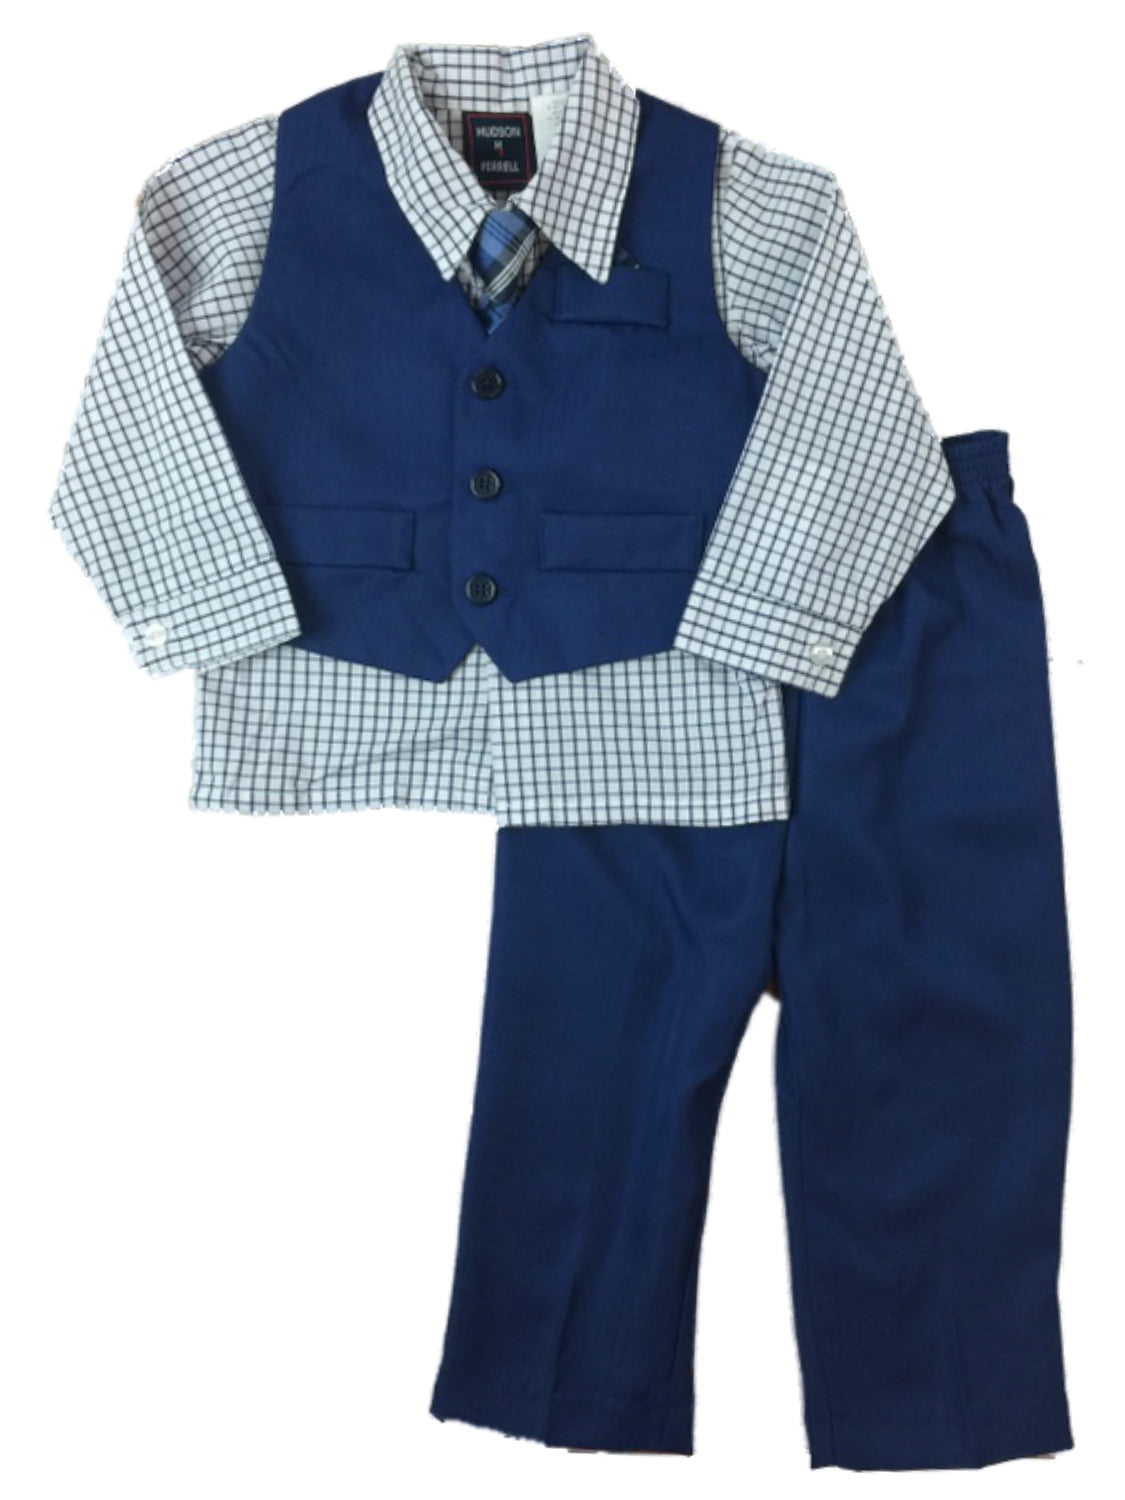 Infant & Toddler Boys 4pc Vest Suits Size 3/6 Months 5T 